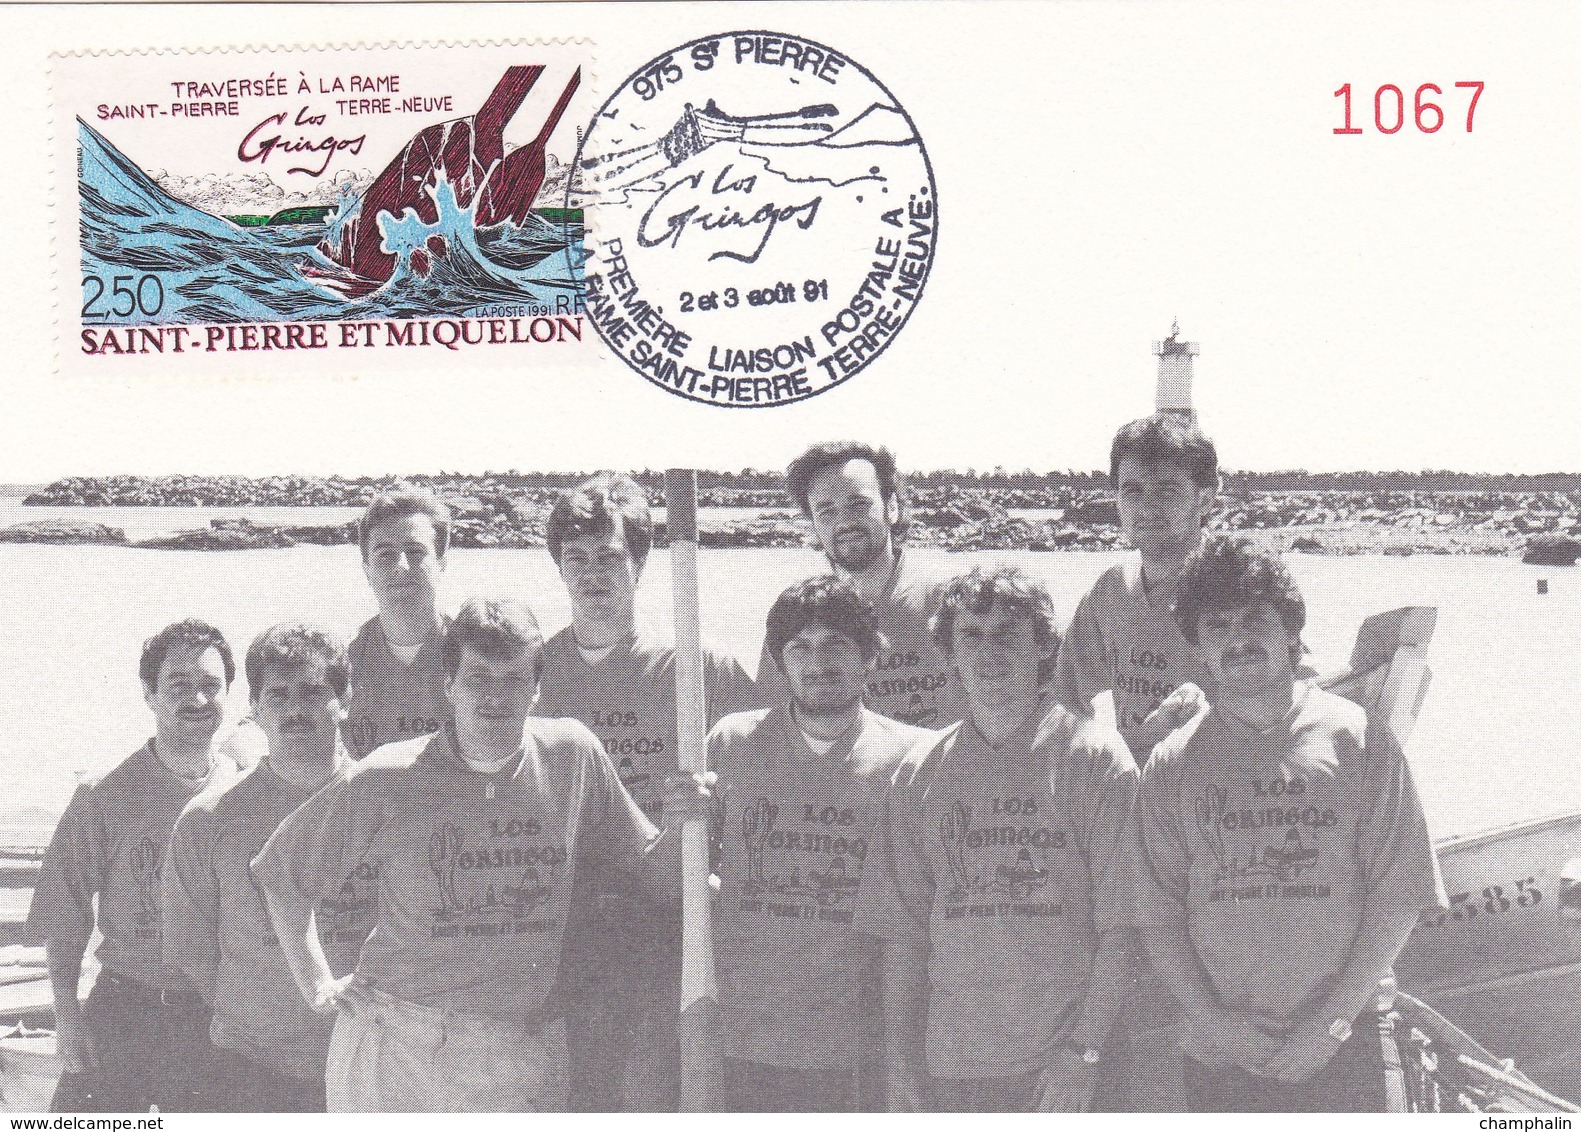 Saint-Pierre & Miquelon - Carte Maximum Gringos Traversée Rame St-Pierre Terre-Neuve - CAD 2-3 Août 1991 - Timbre YT 546 - Maximum Cards